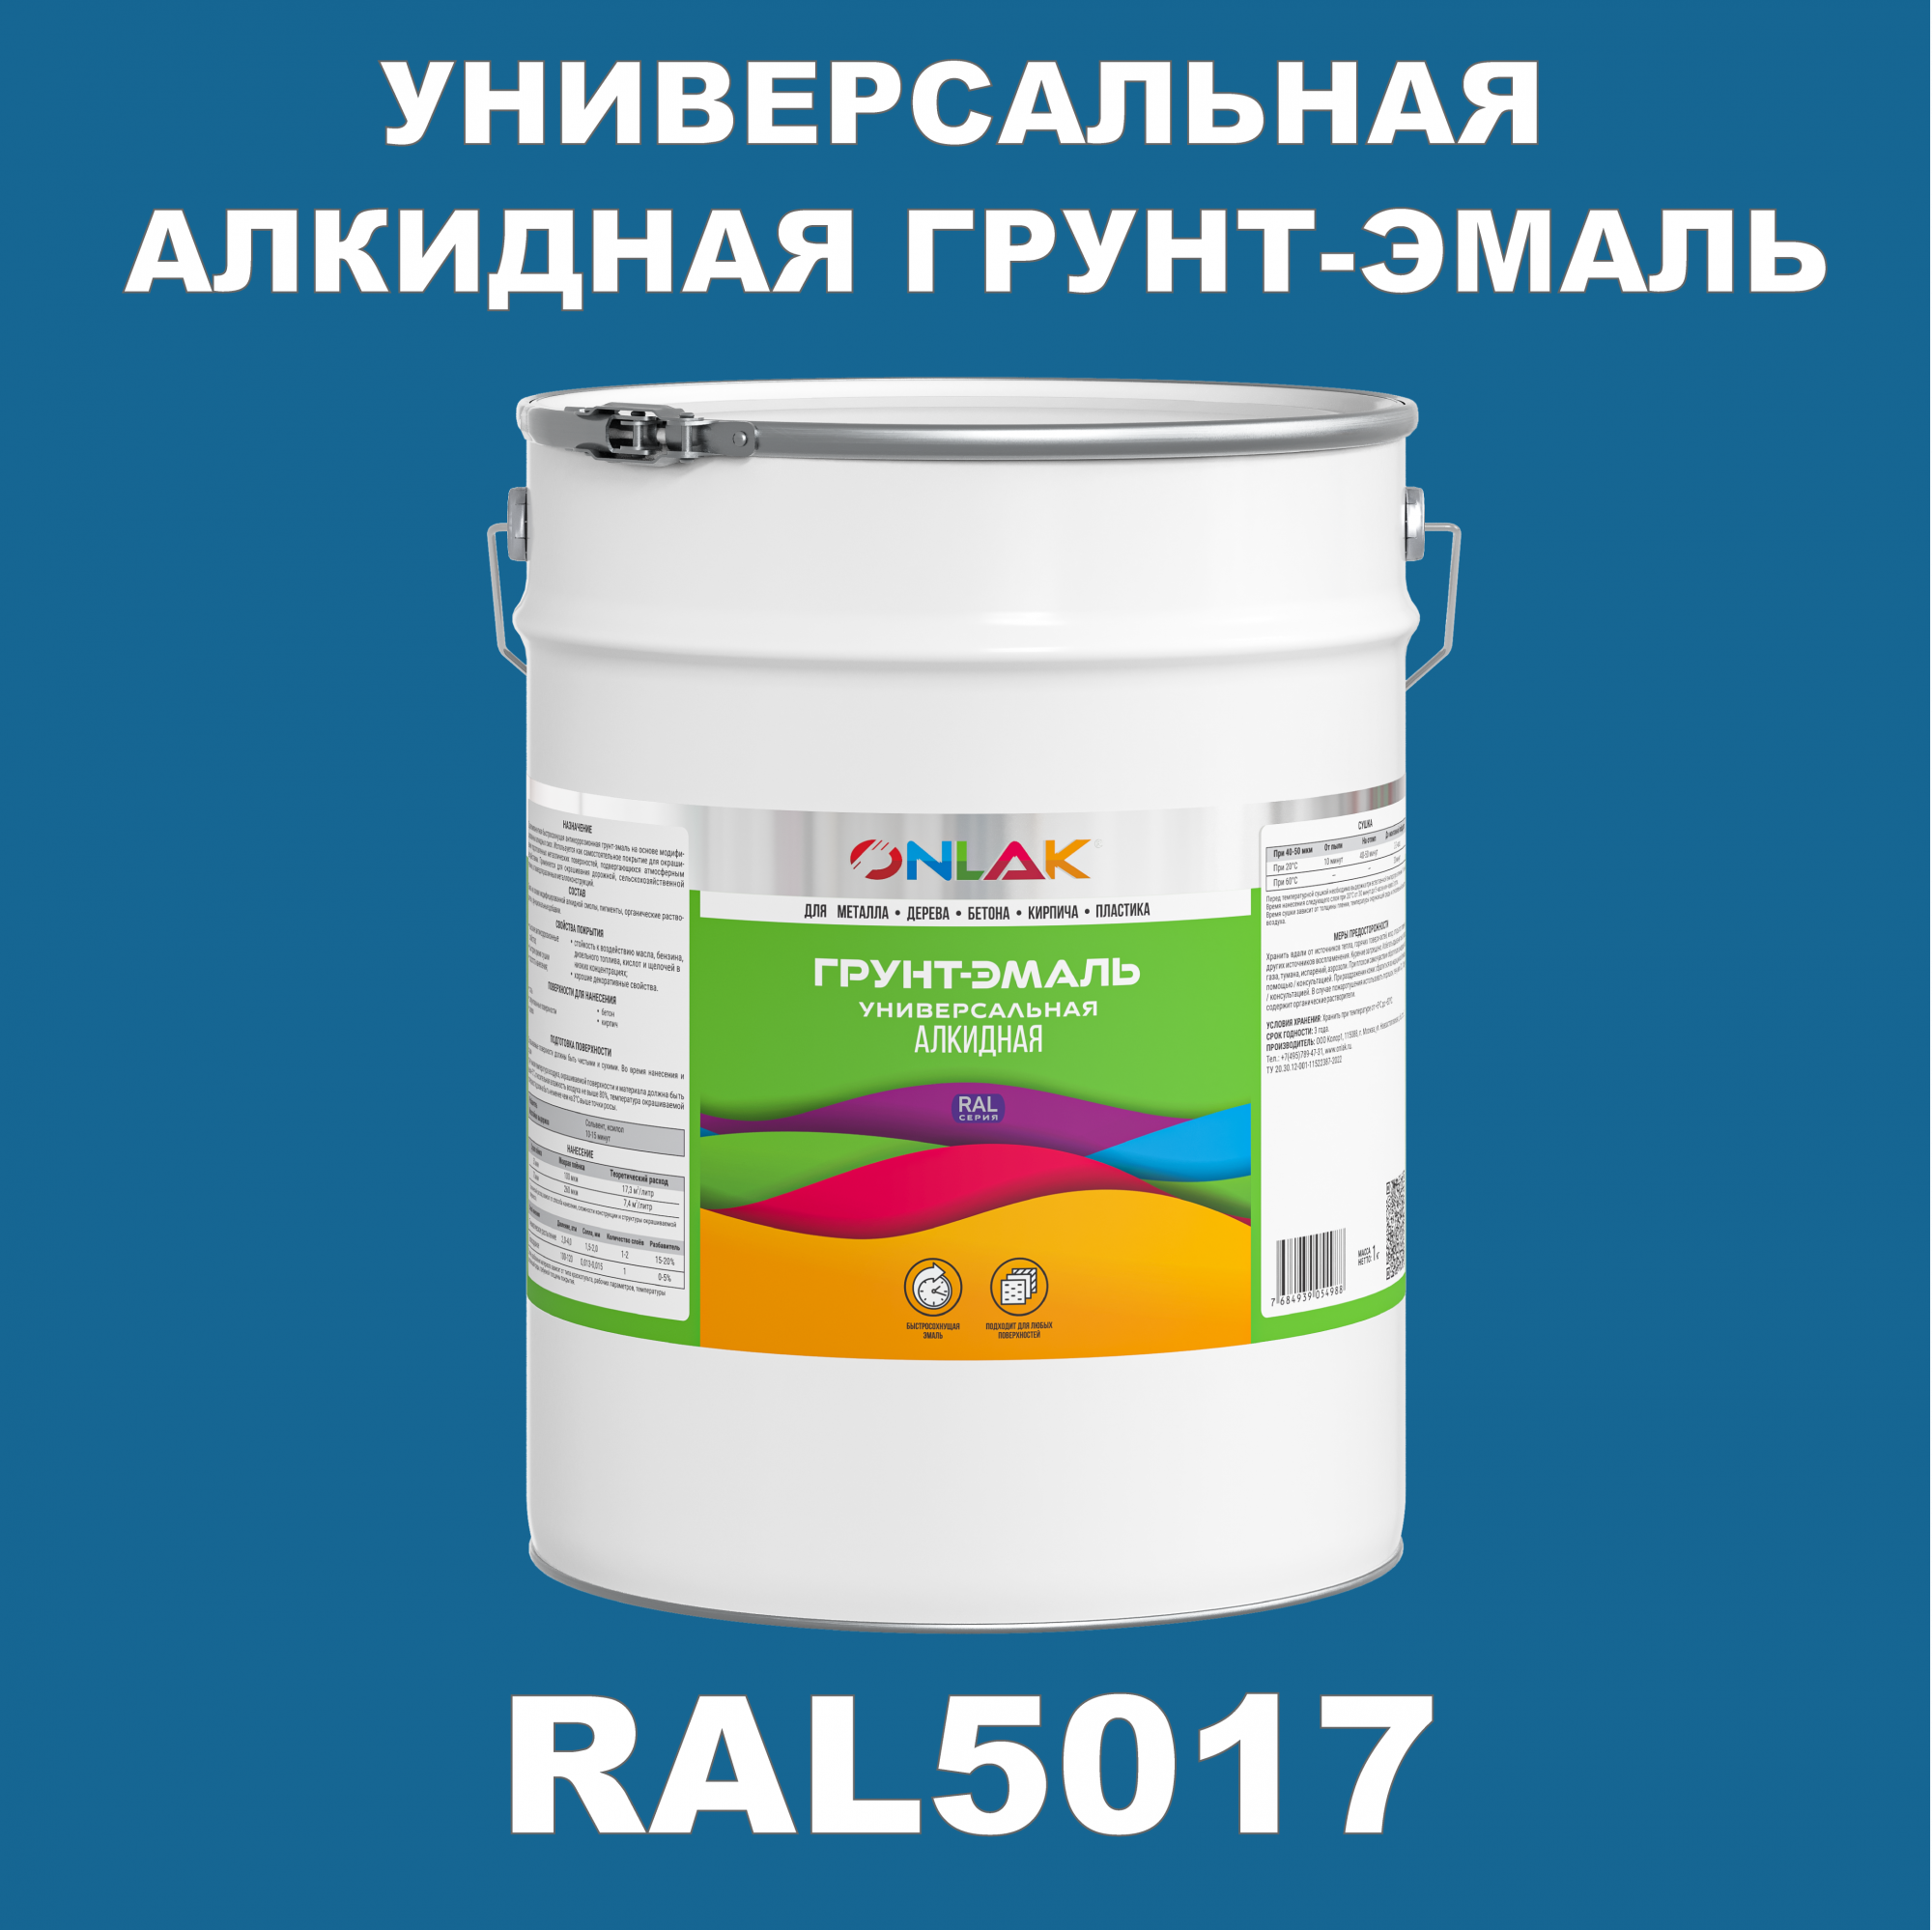 Грунт-эмаль ONLAK 1К RAL5017 антикоррозионная алкидная по металлу по ржавчине 20 кг грунт эмаль yollo по ржавчине алкидная синяя 0 9 кг